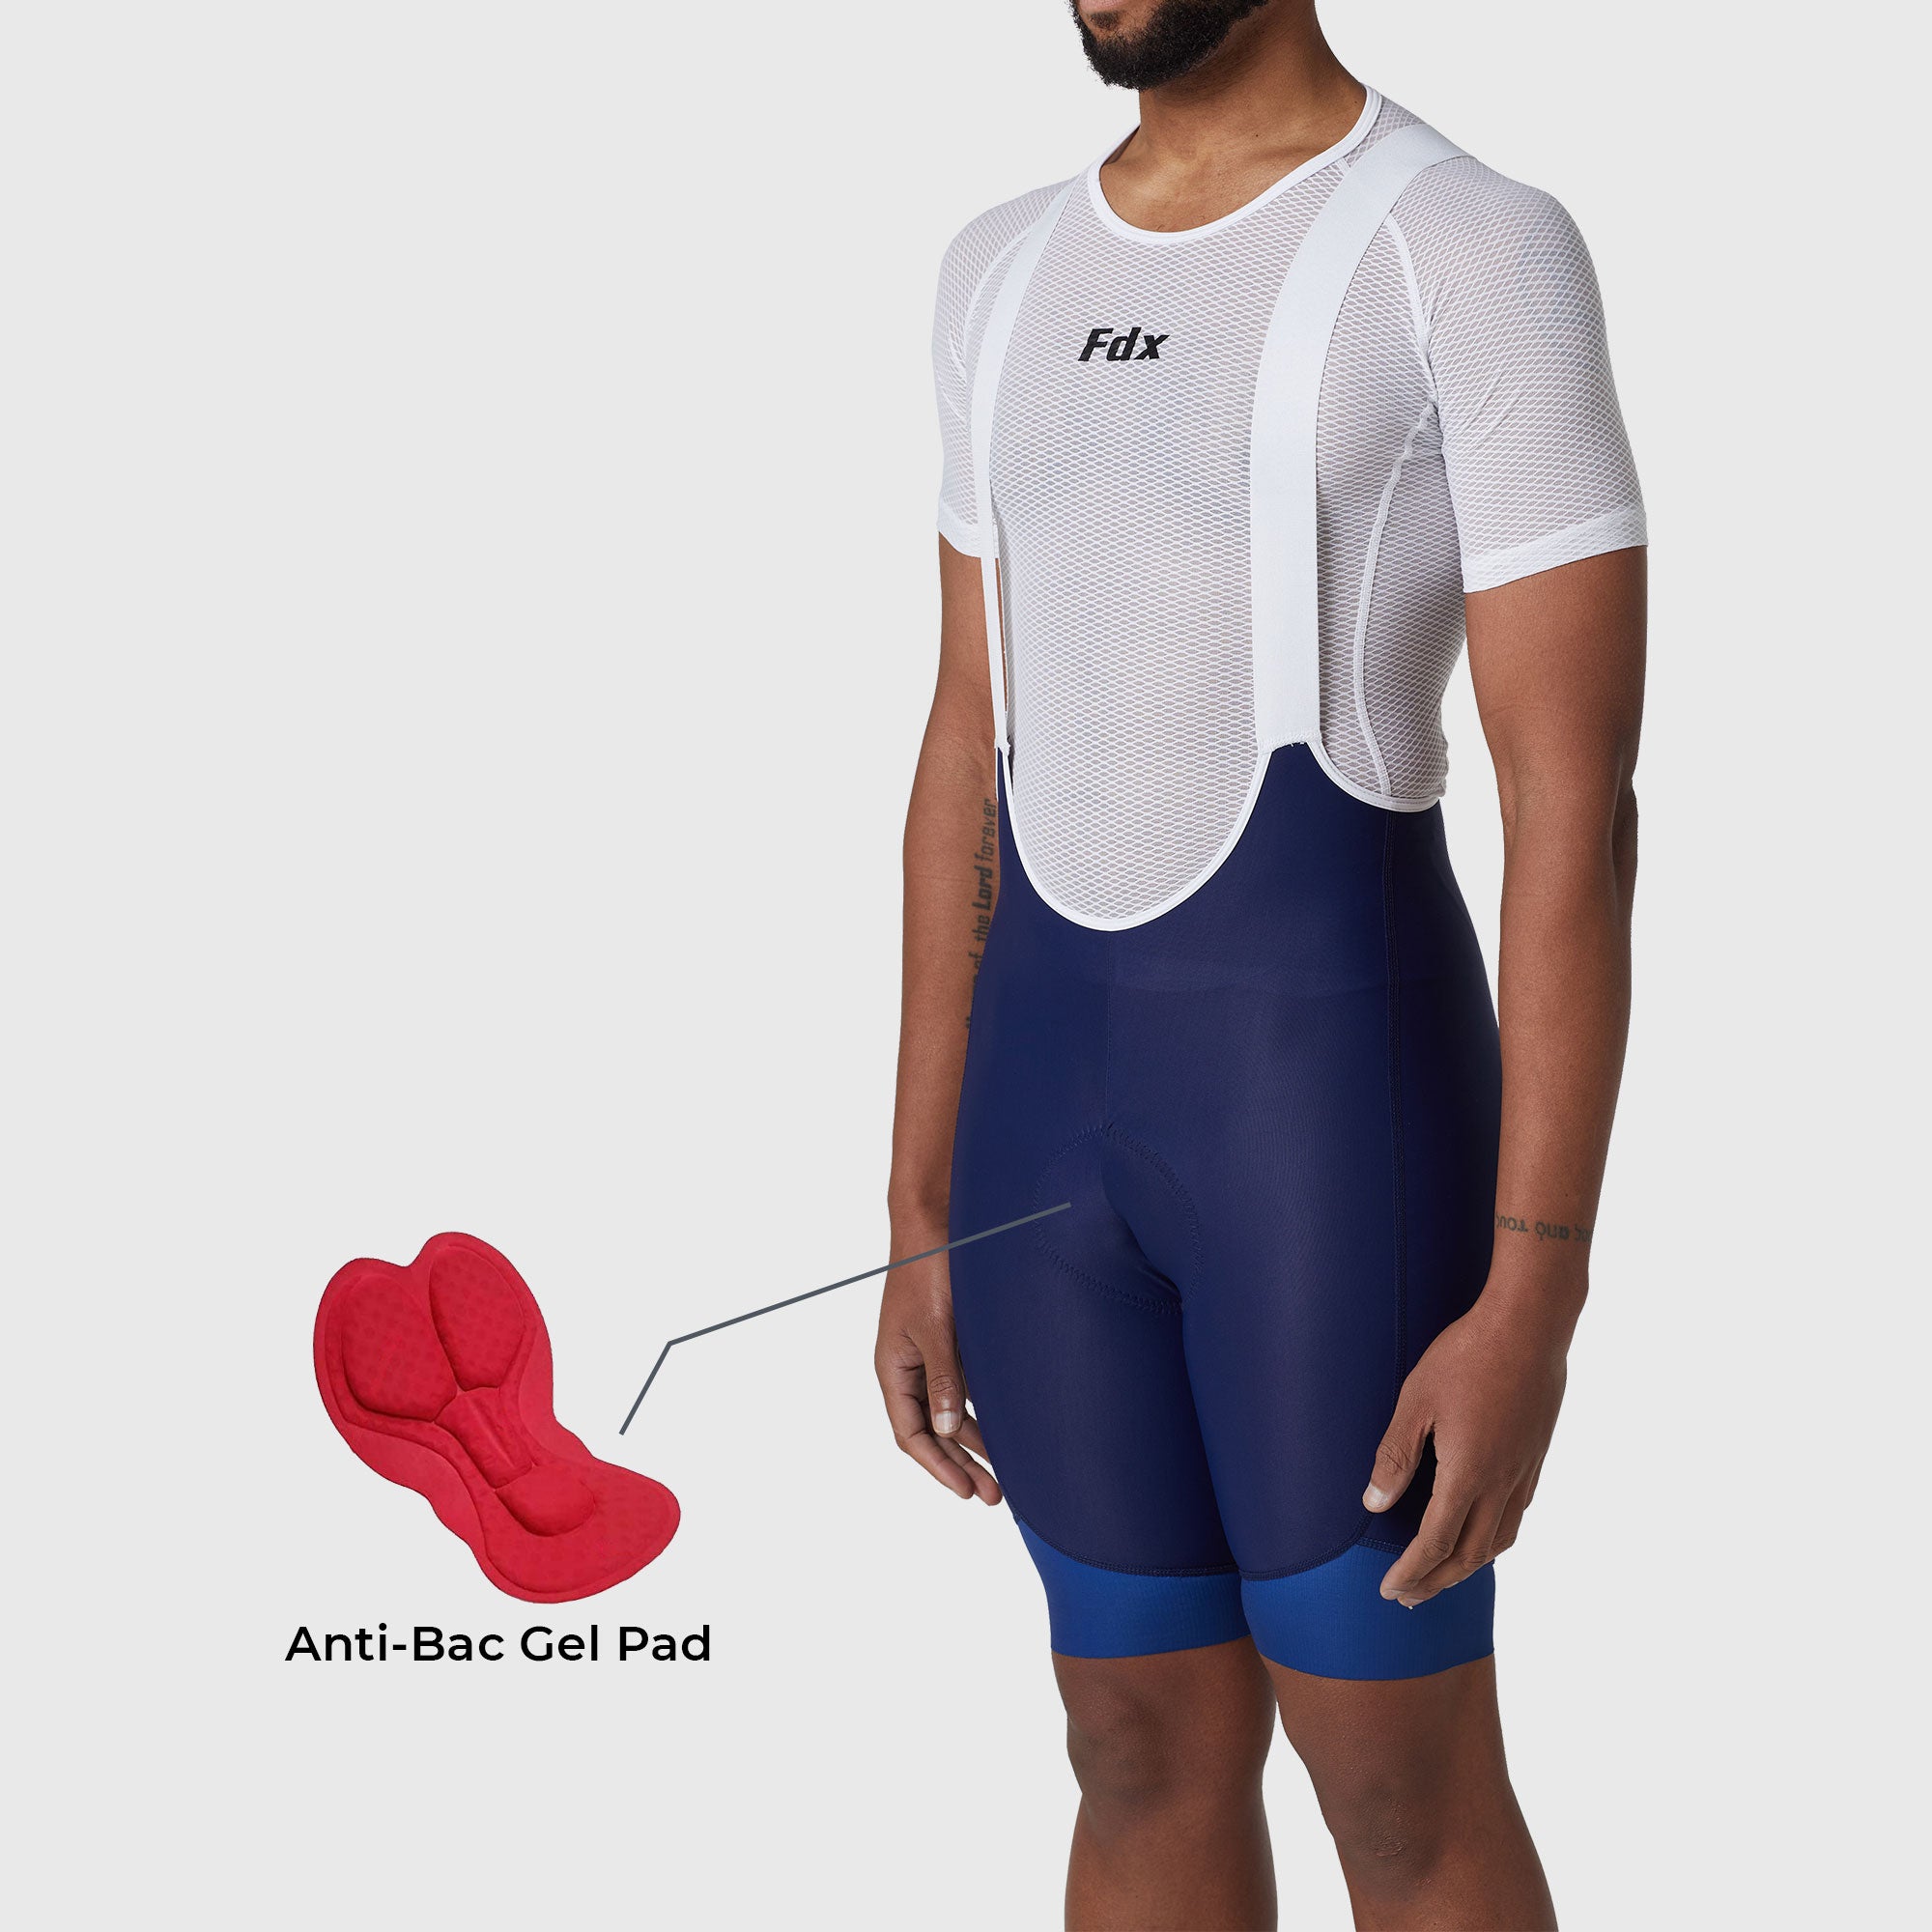 Fdx Duo Blue Men's Padded Summer Cycling Cargo Bib Shorts